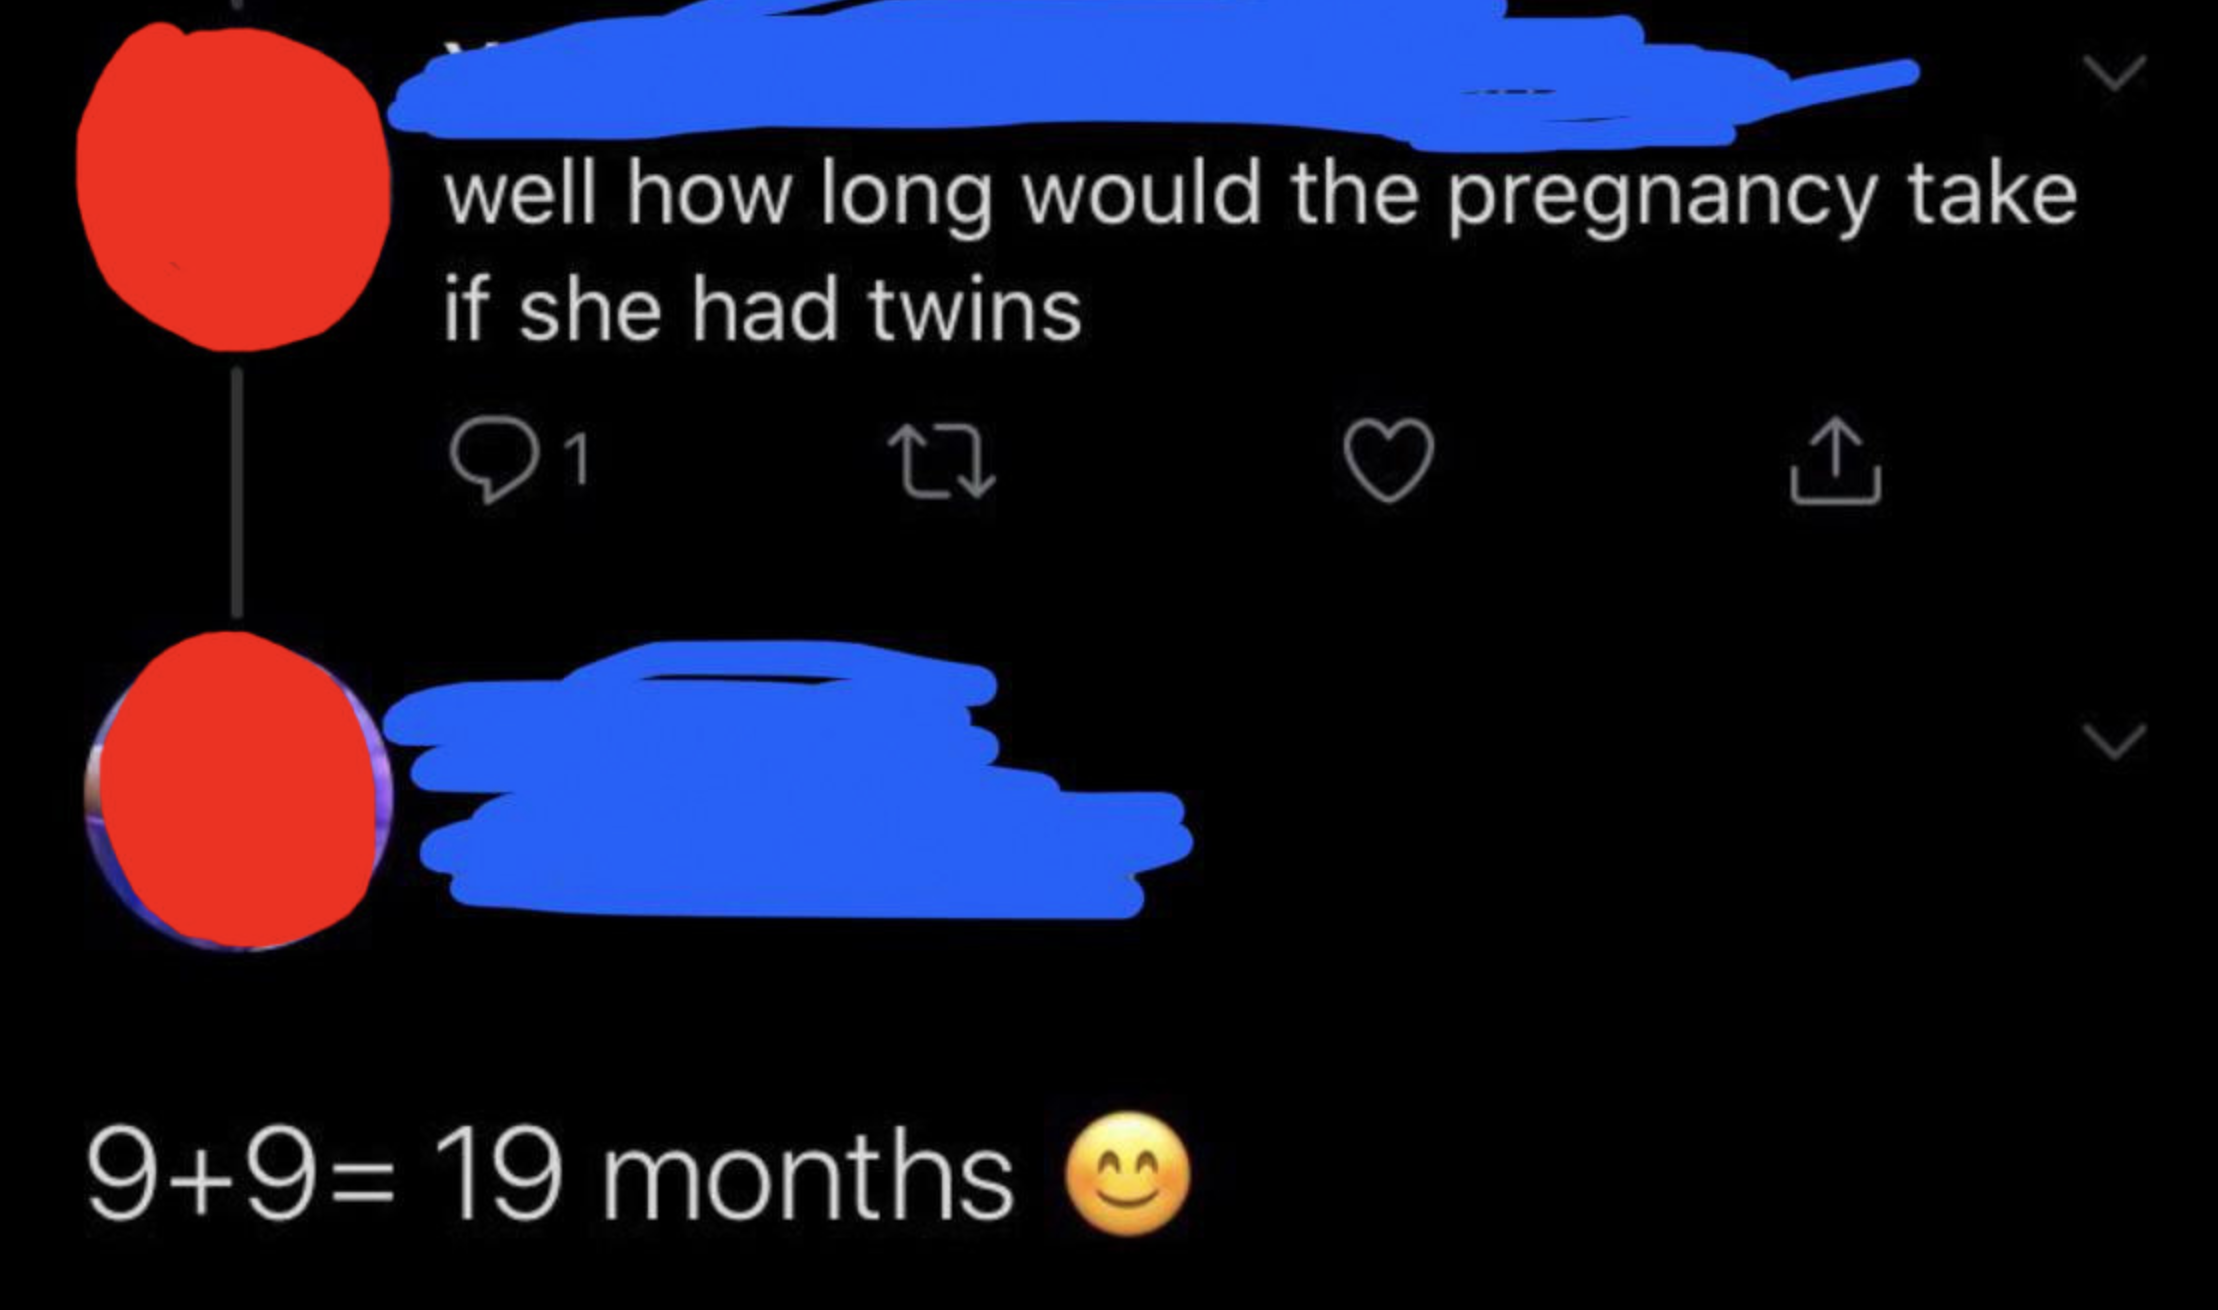 推特的人认为婴儿出生后19个月